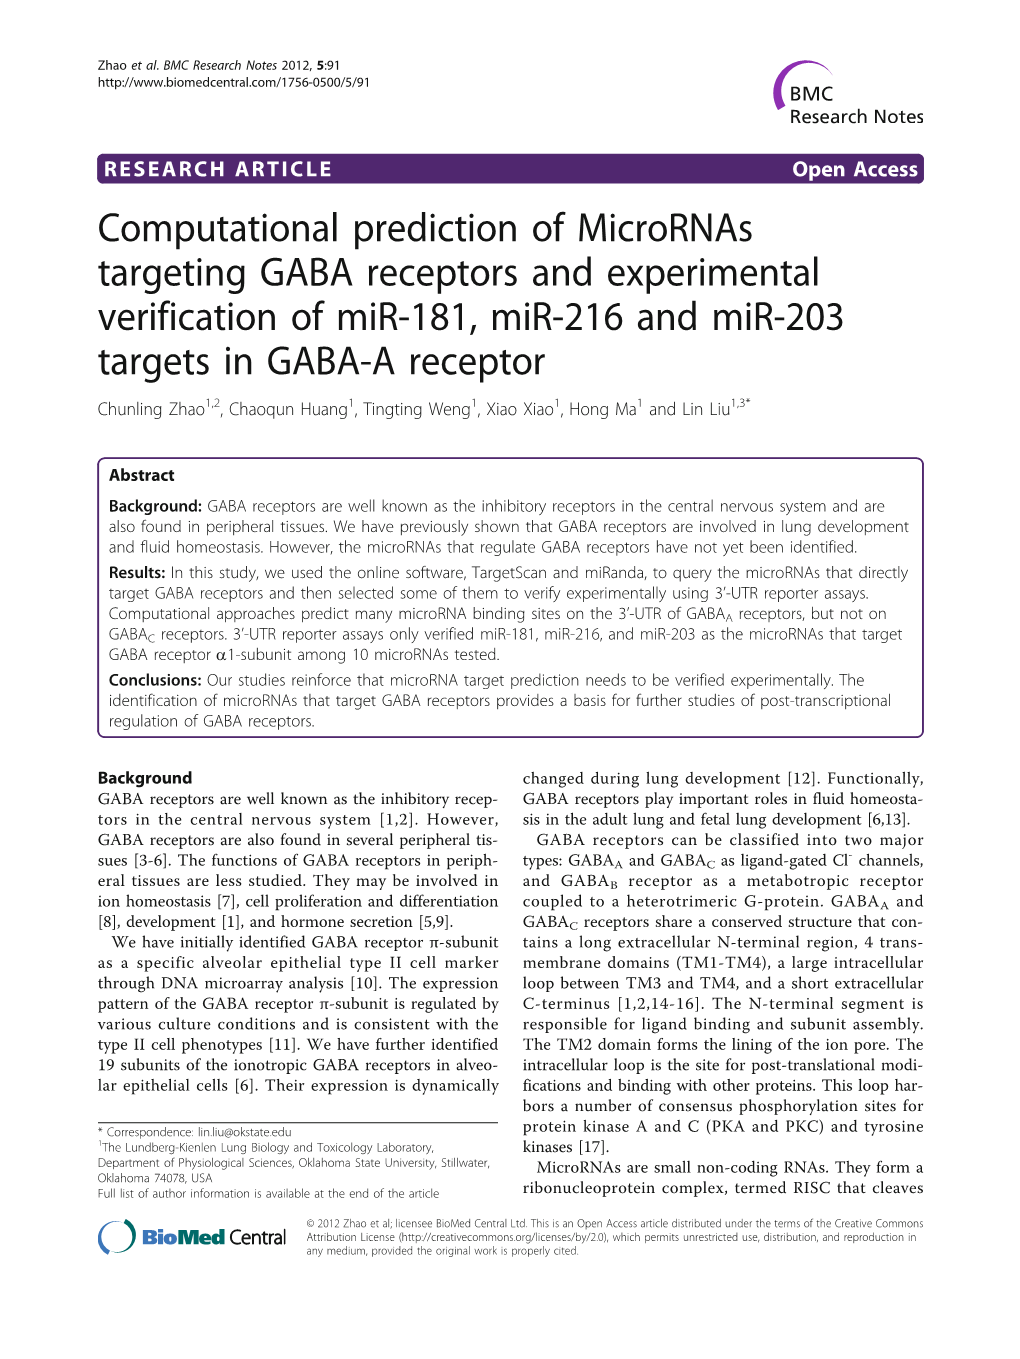 Computational Prediction of Micrornas Targeting GABA